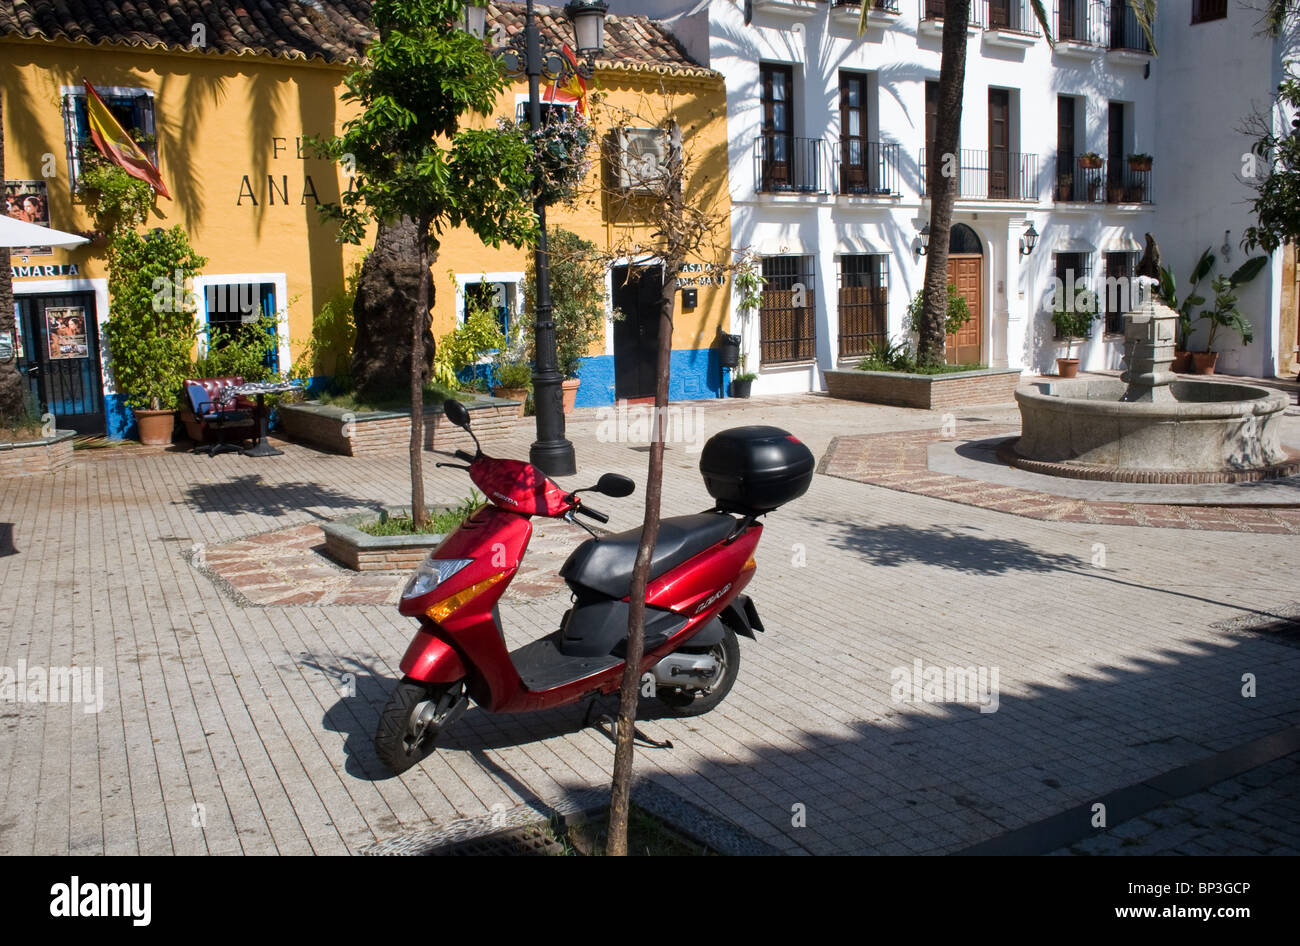 Plaza Santa Cristo, Old Town, Marbella, Costa del Sol, Andalucia, Spain Stock Photo